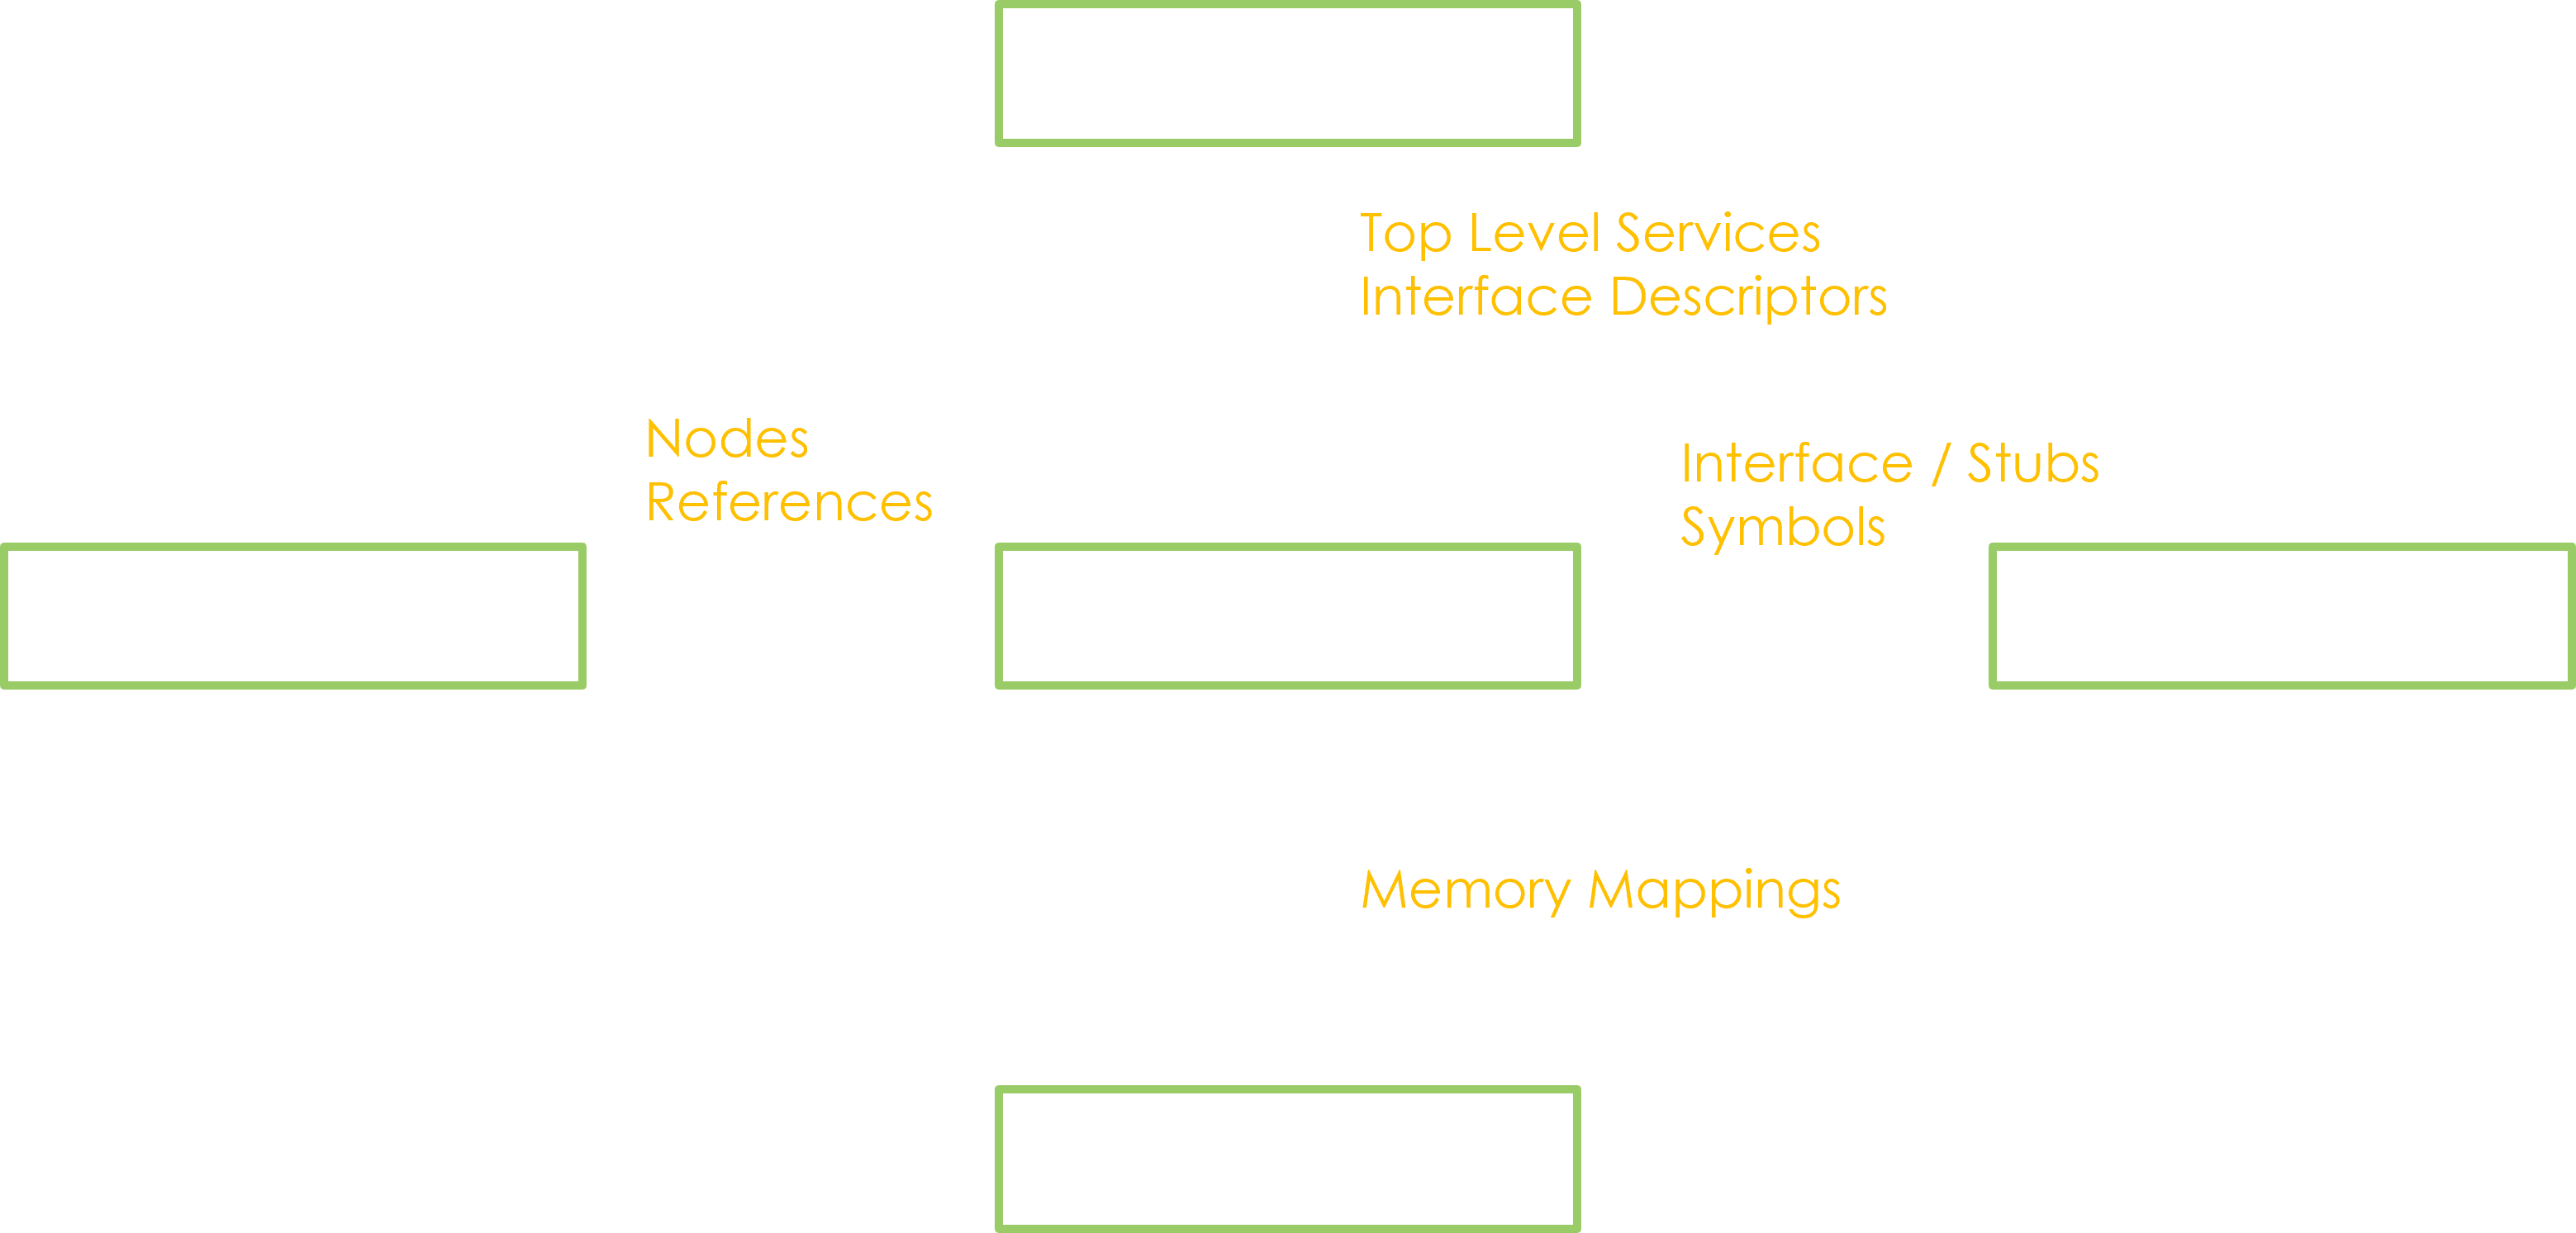 The Dynamic Search module